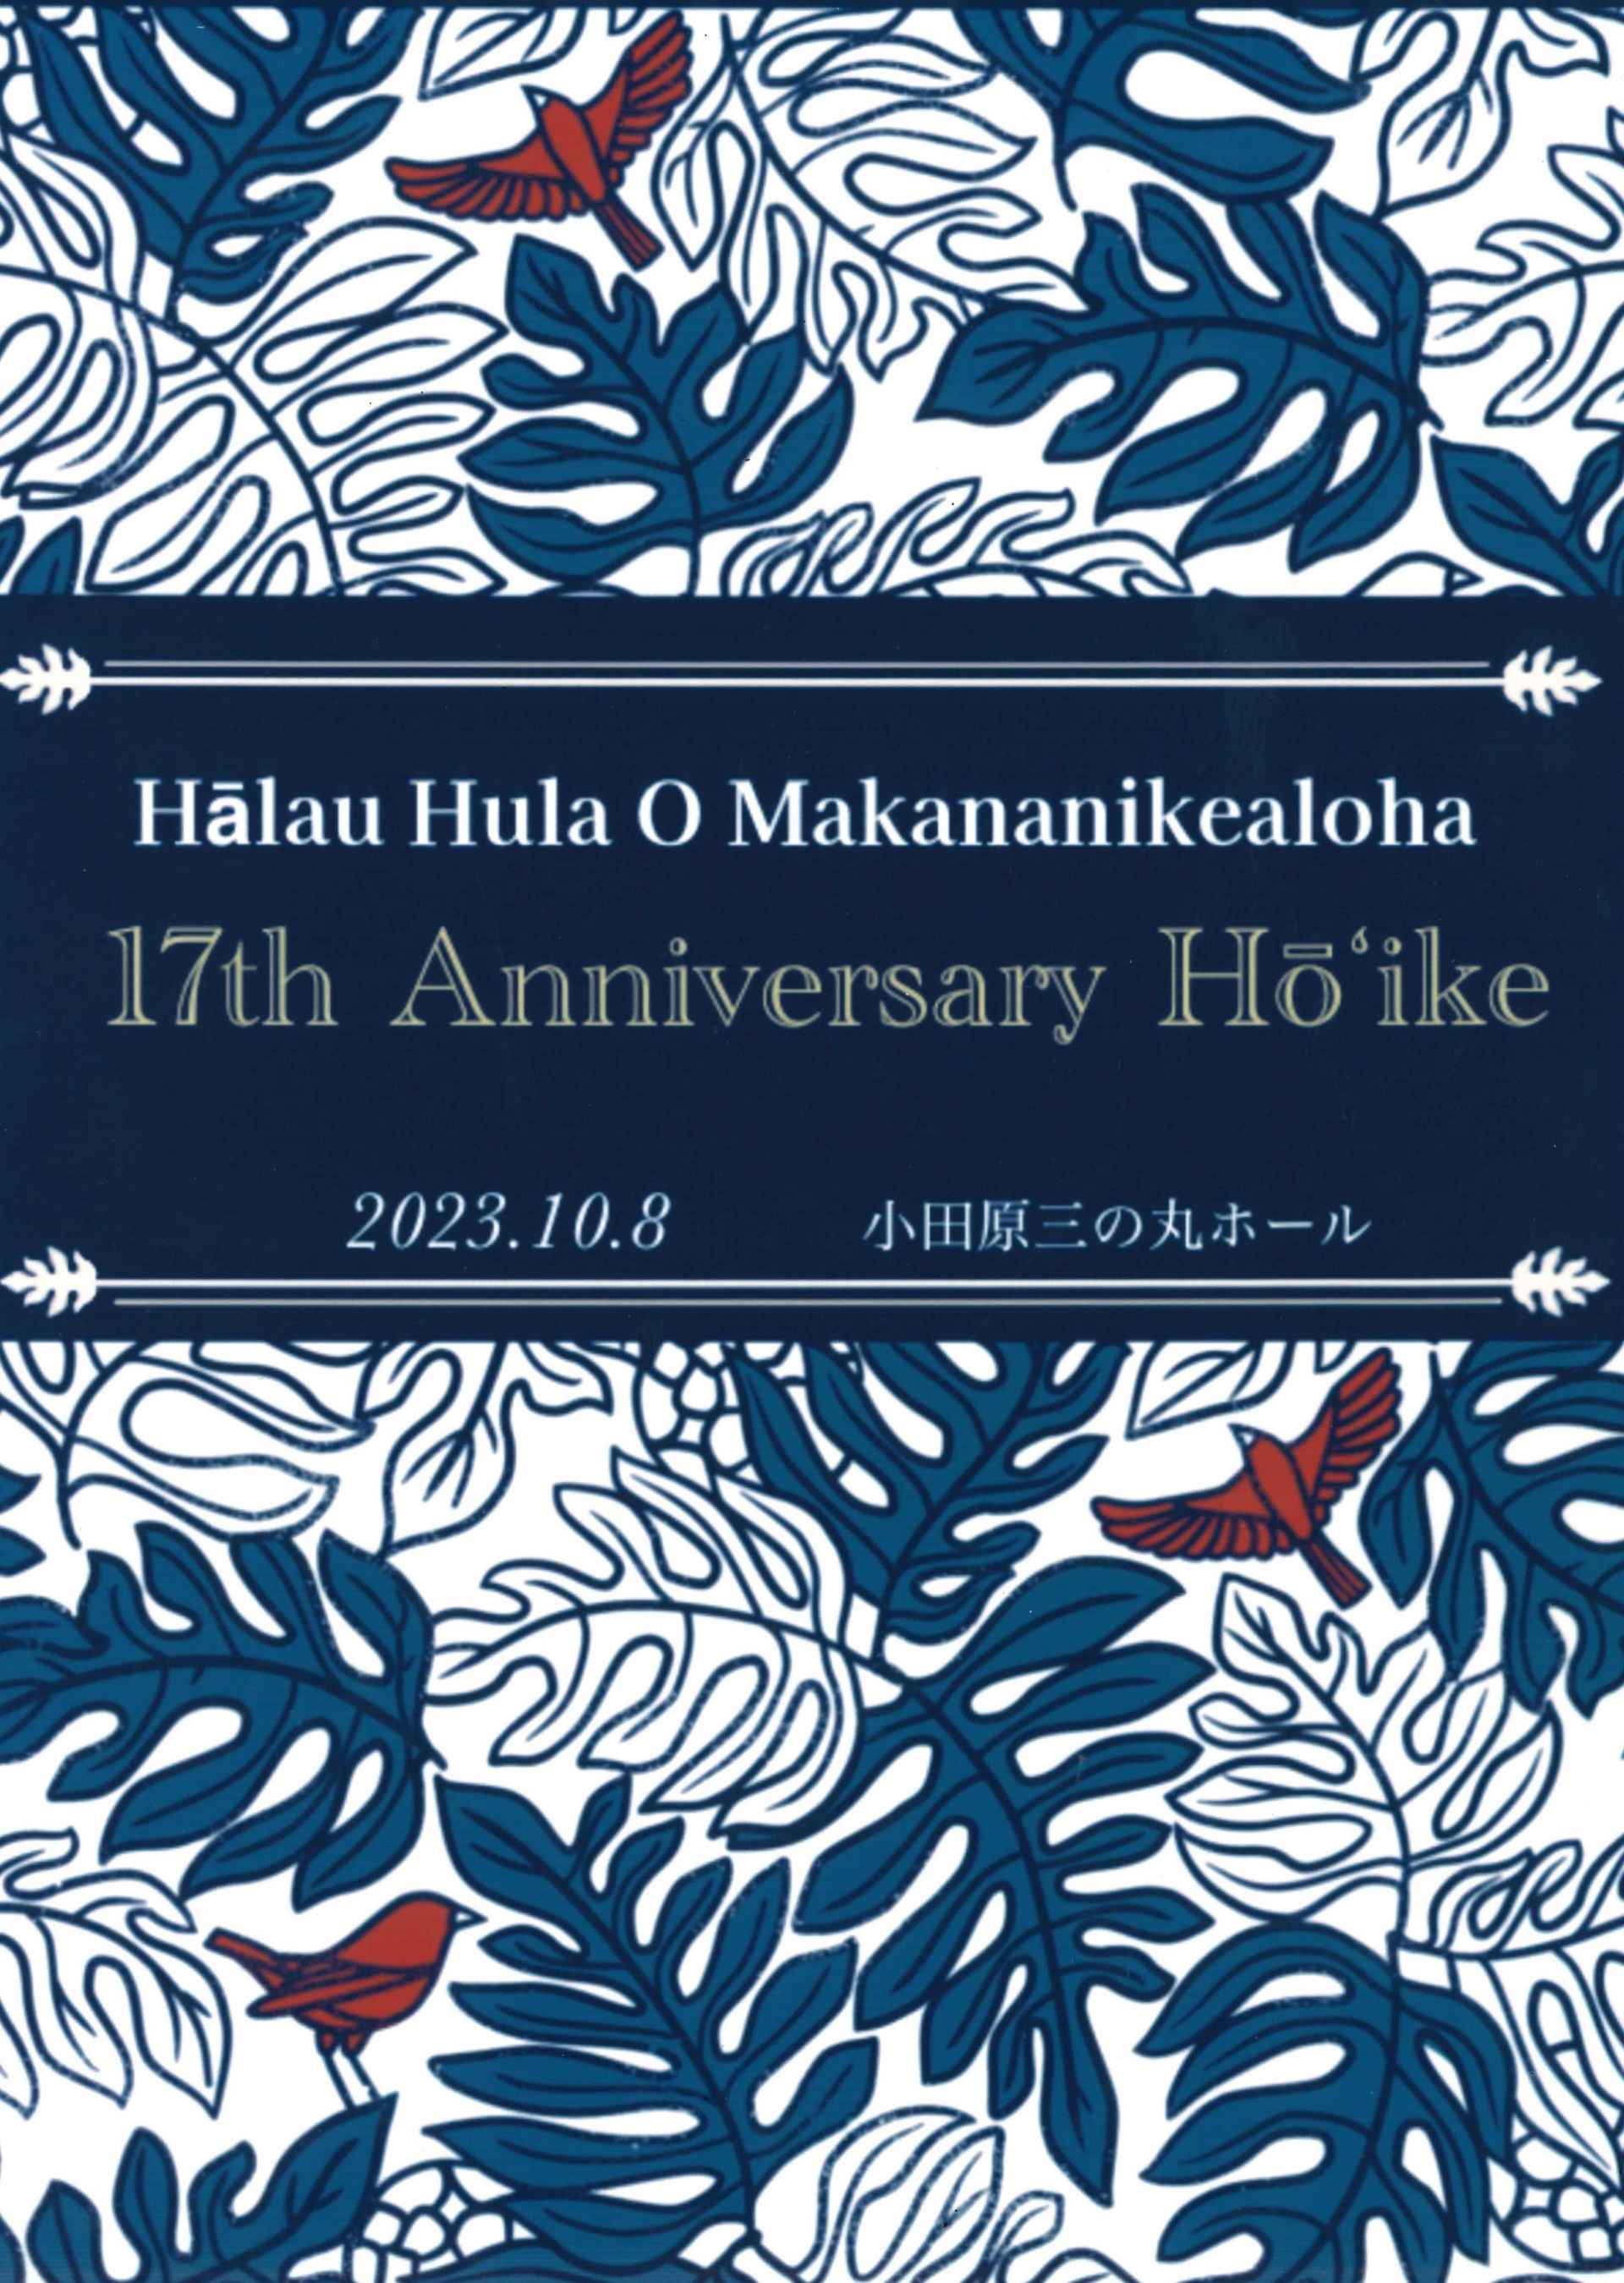 Halau Hula O Makananikealoha 17th Anniversary Ho’ike